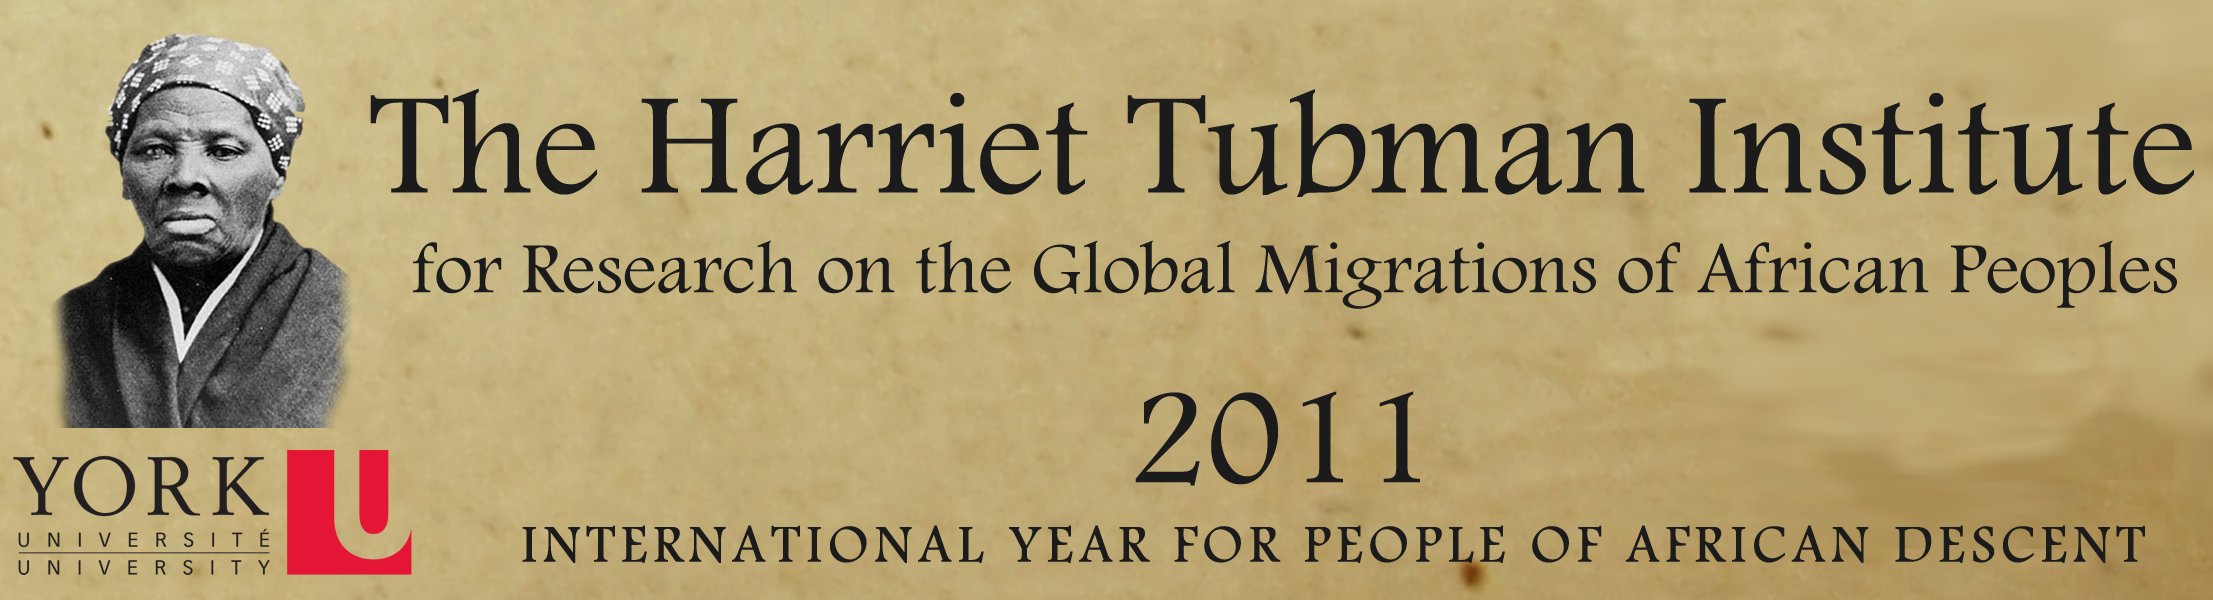 tubman logo